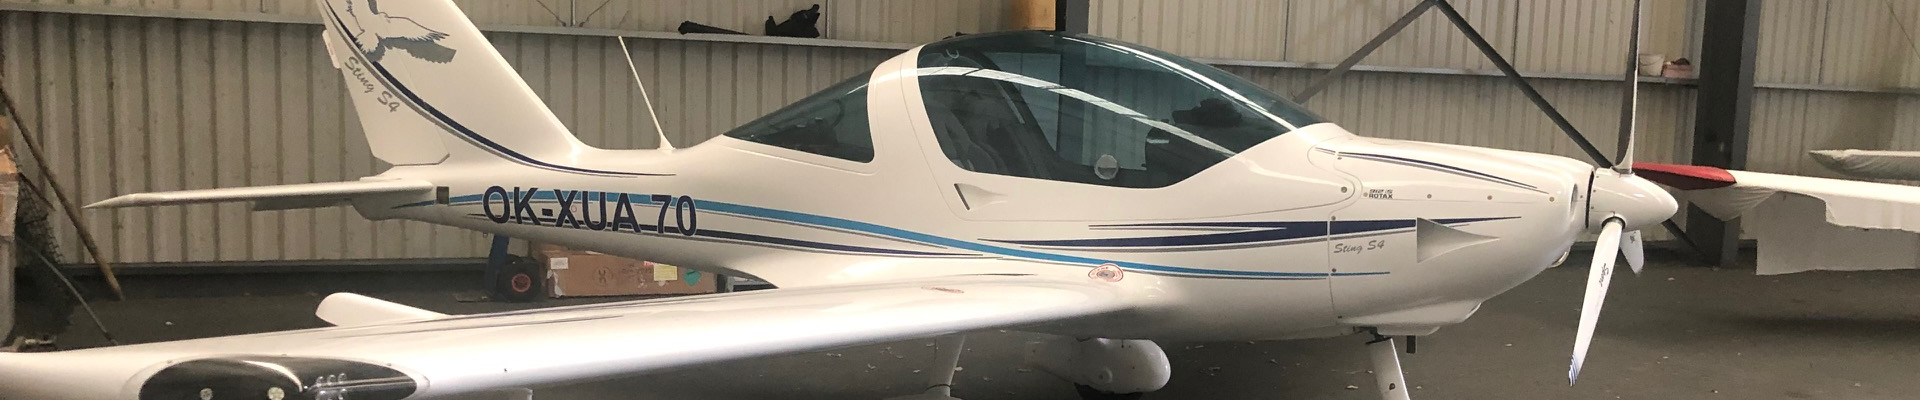 Le Sting S4 est arrivé à Saumur Air Club